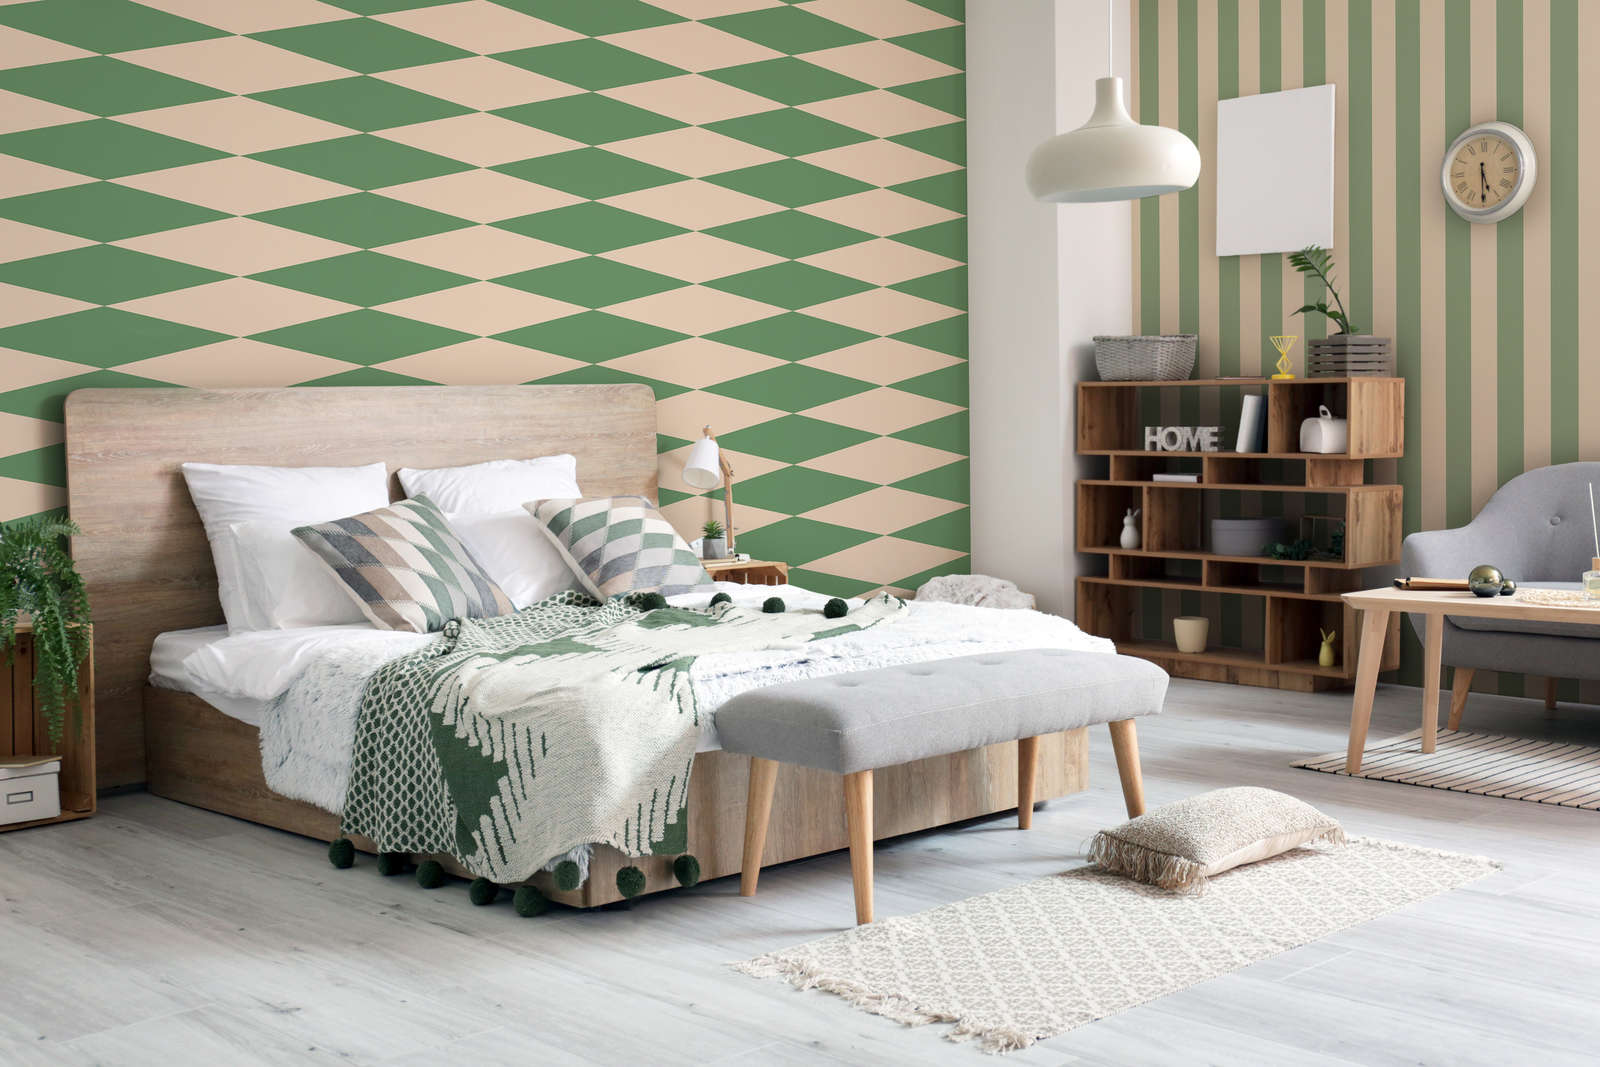             70s Look Lozenge Wallpaper - Green, Beige | Textured Nonwoven
        